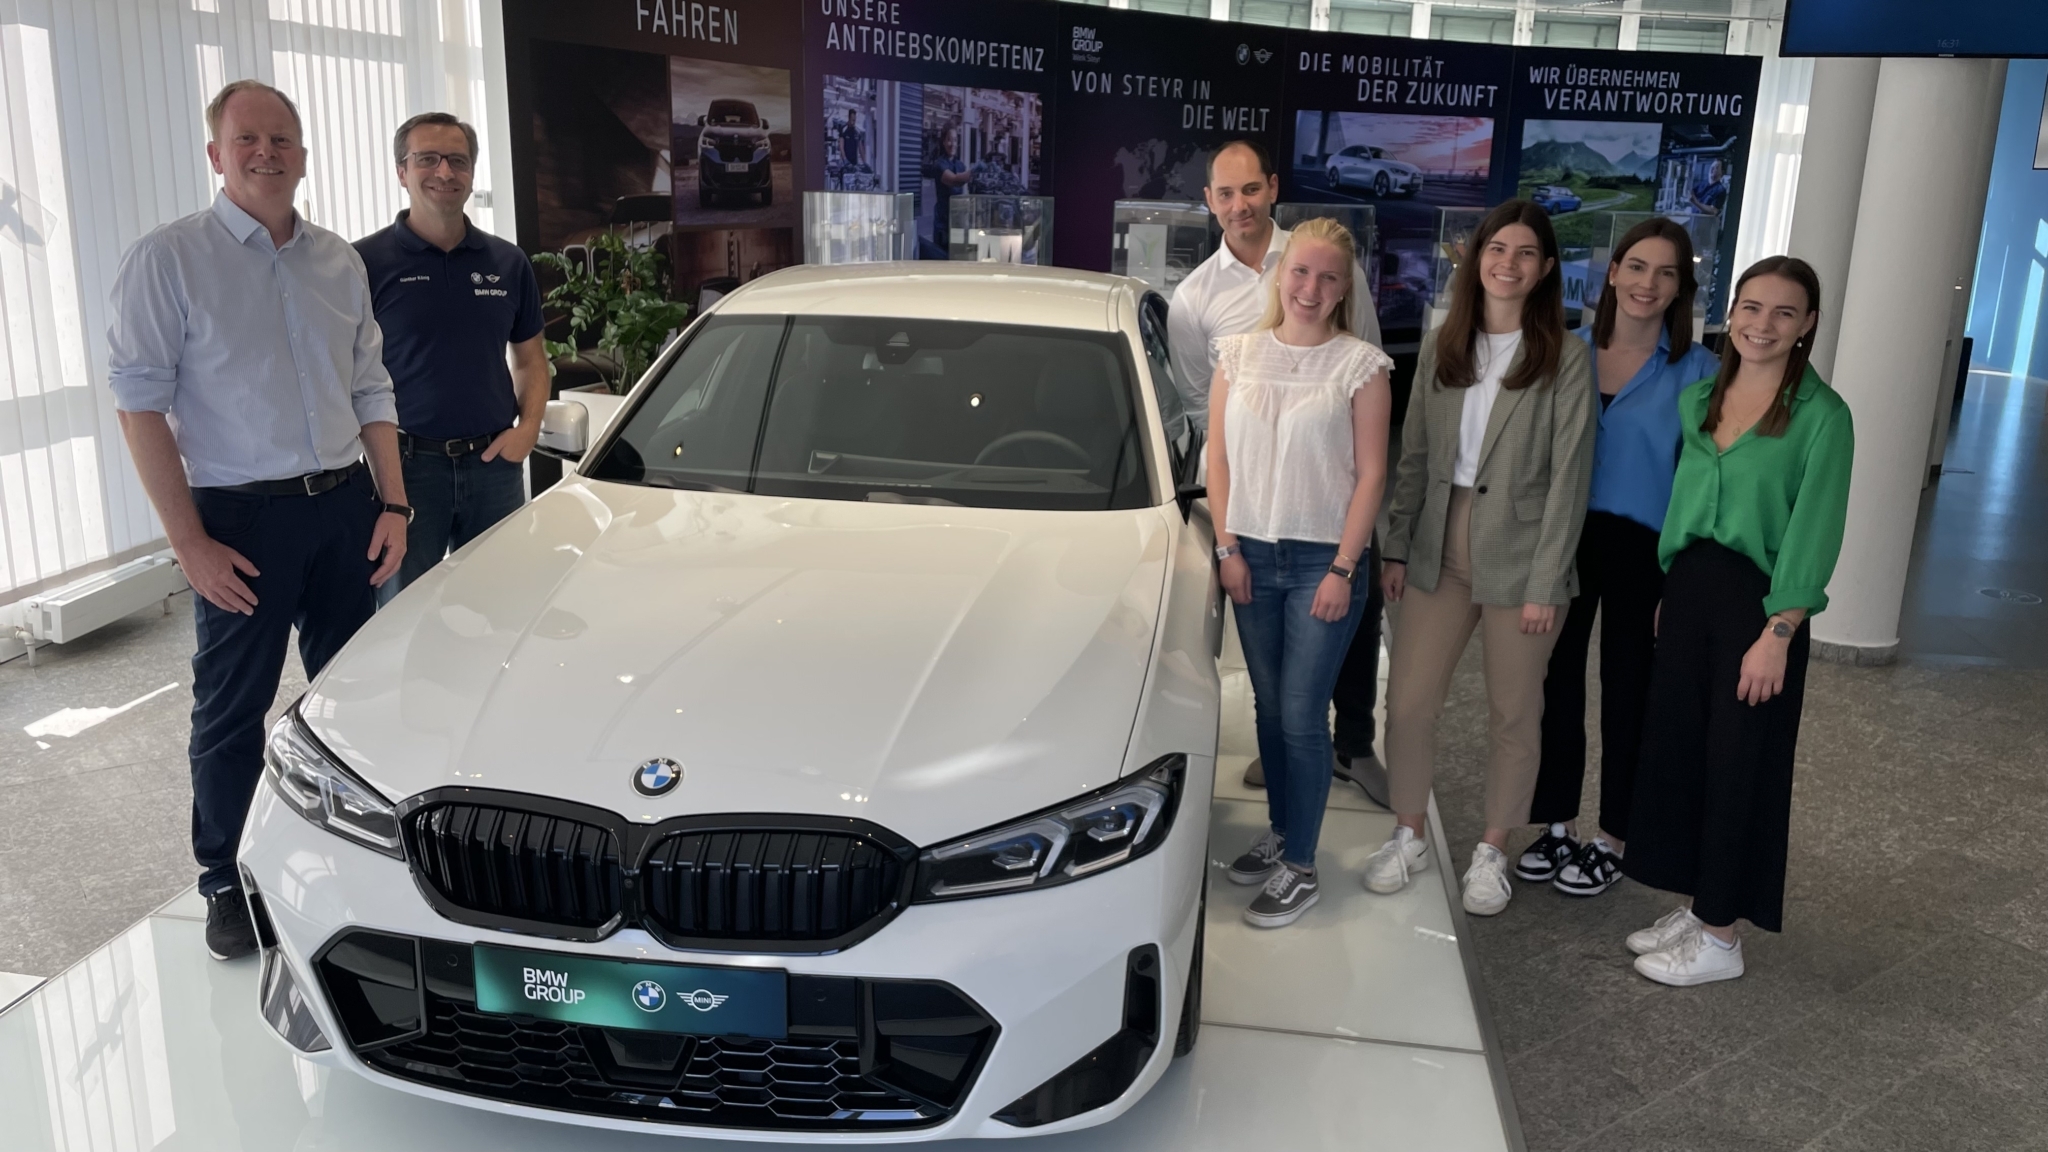 Auf dem Foto steht das Projektteam und ihre Betreuer bei einem BMW-Auto für ein Gruppenfoto zusammen.